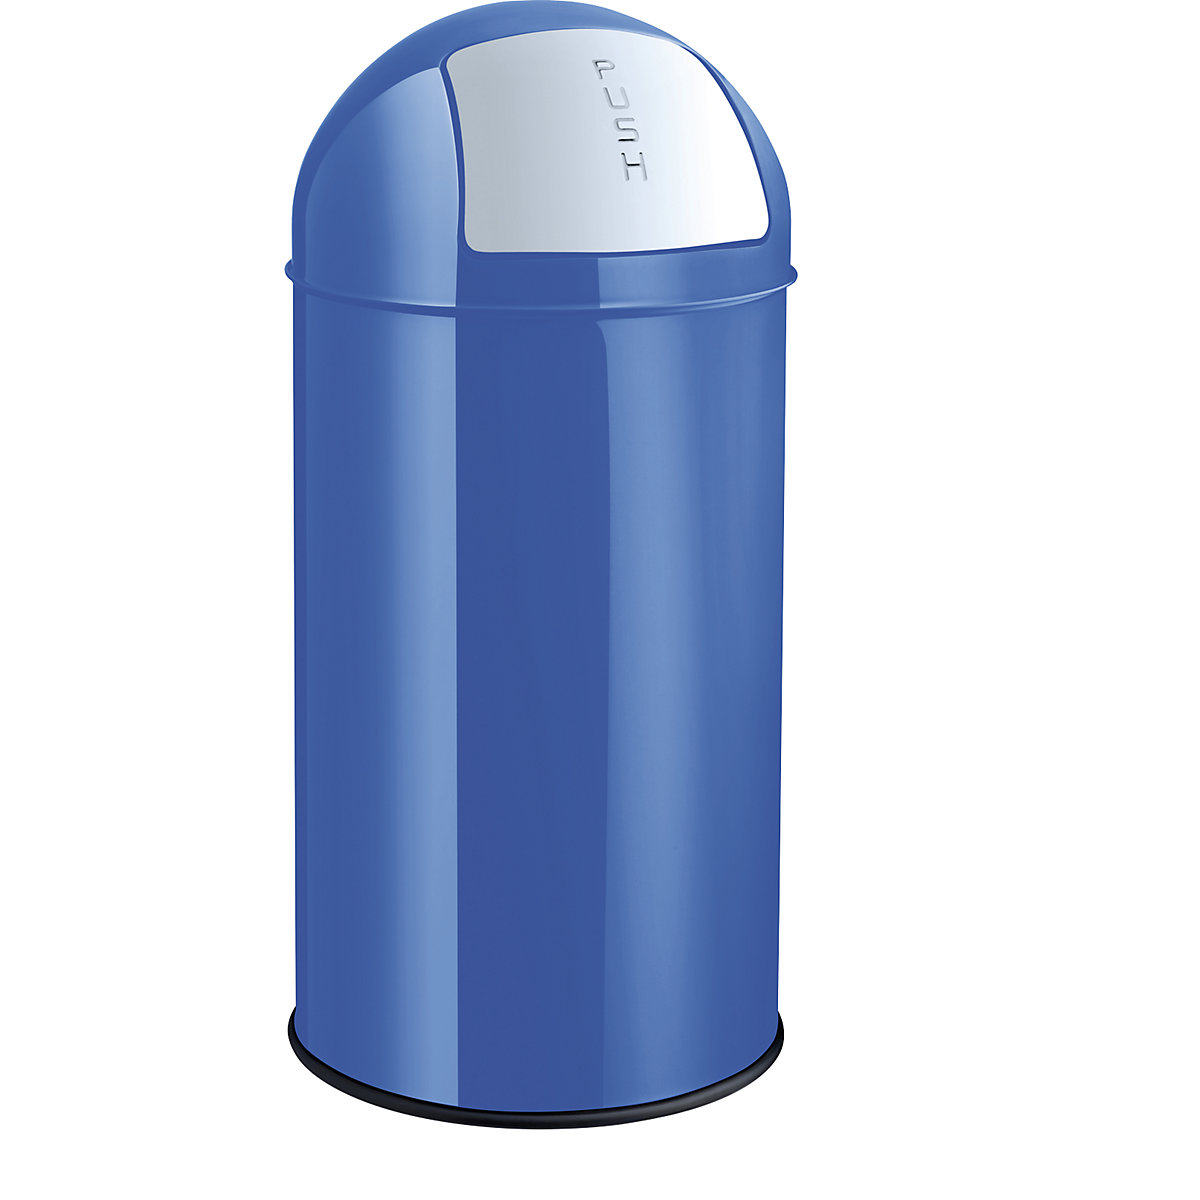 Samozavírací nádoba na odpadky z oceli – helit, objem 50 l, v x Ø 745 x 360 mm, modrá-5